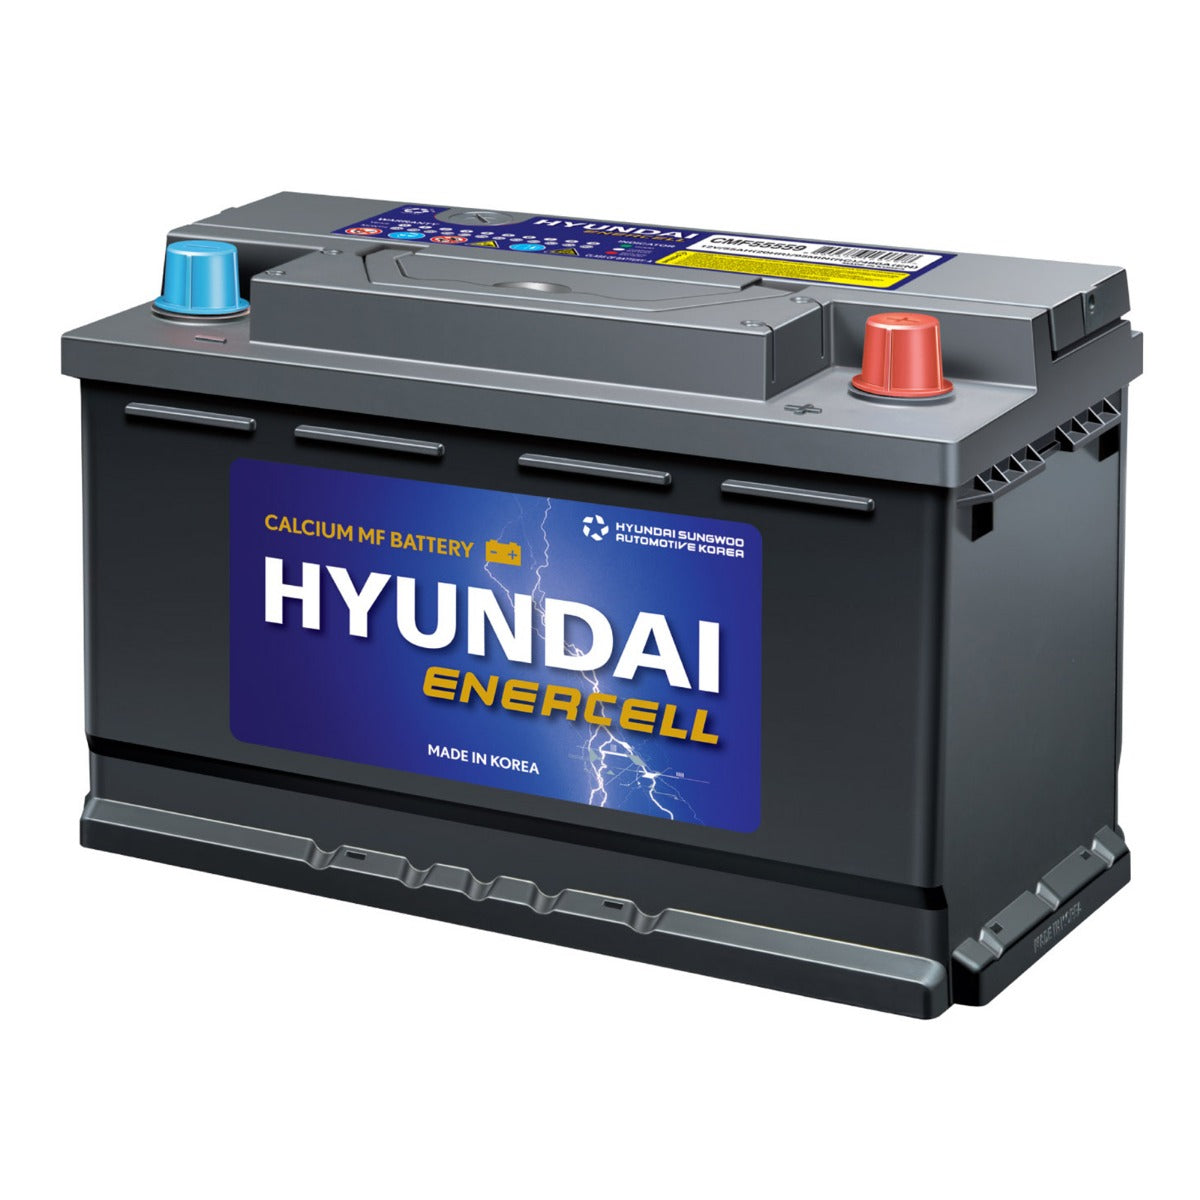 HYUNDAI 12V 62Ah CMF Car Battery European Vehicle Sealed SLA Solar Panel 520CCA